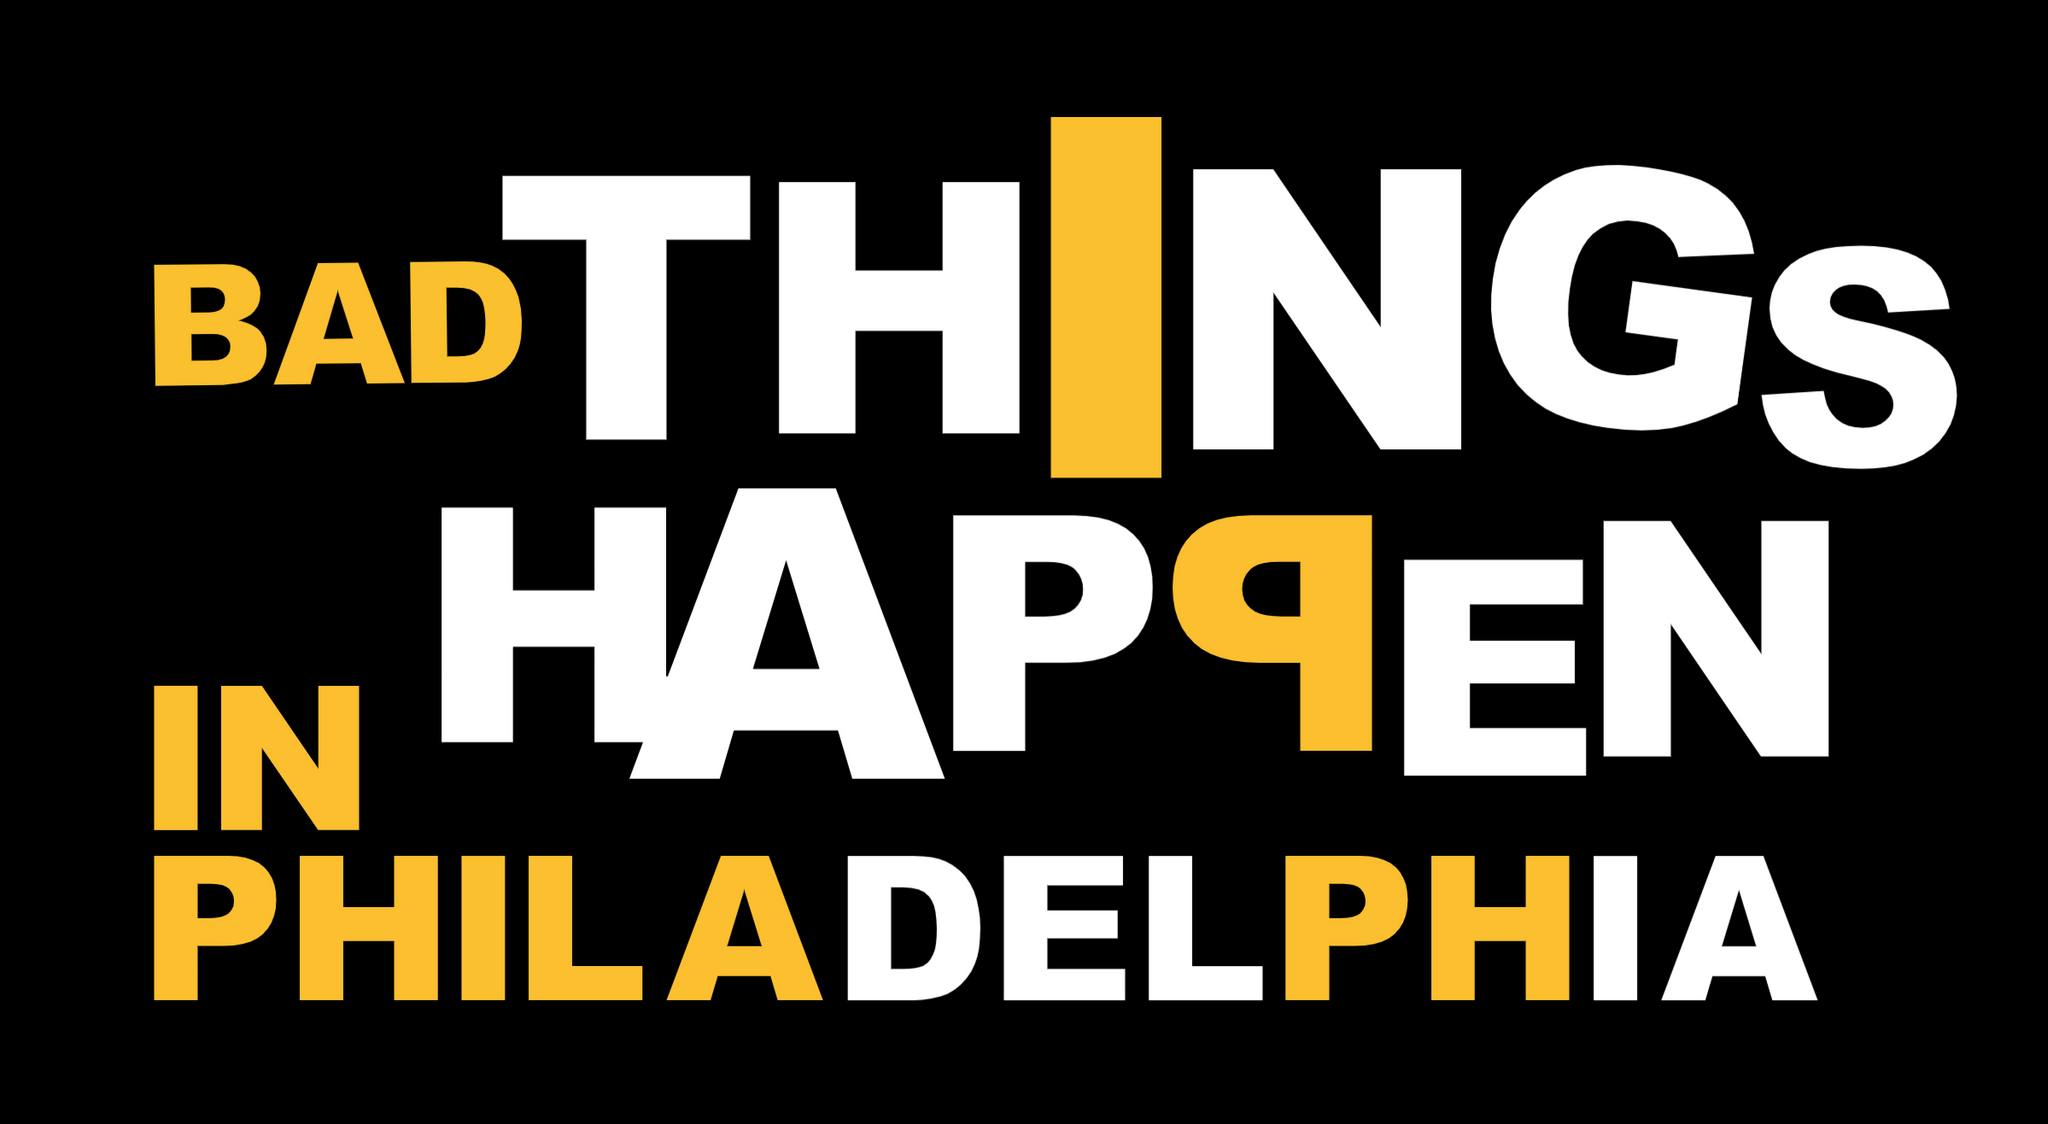 Bad Things Happen in Philadelphia Decal